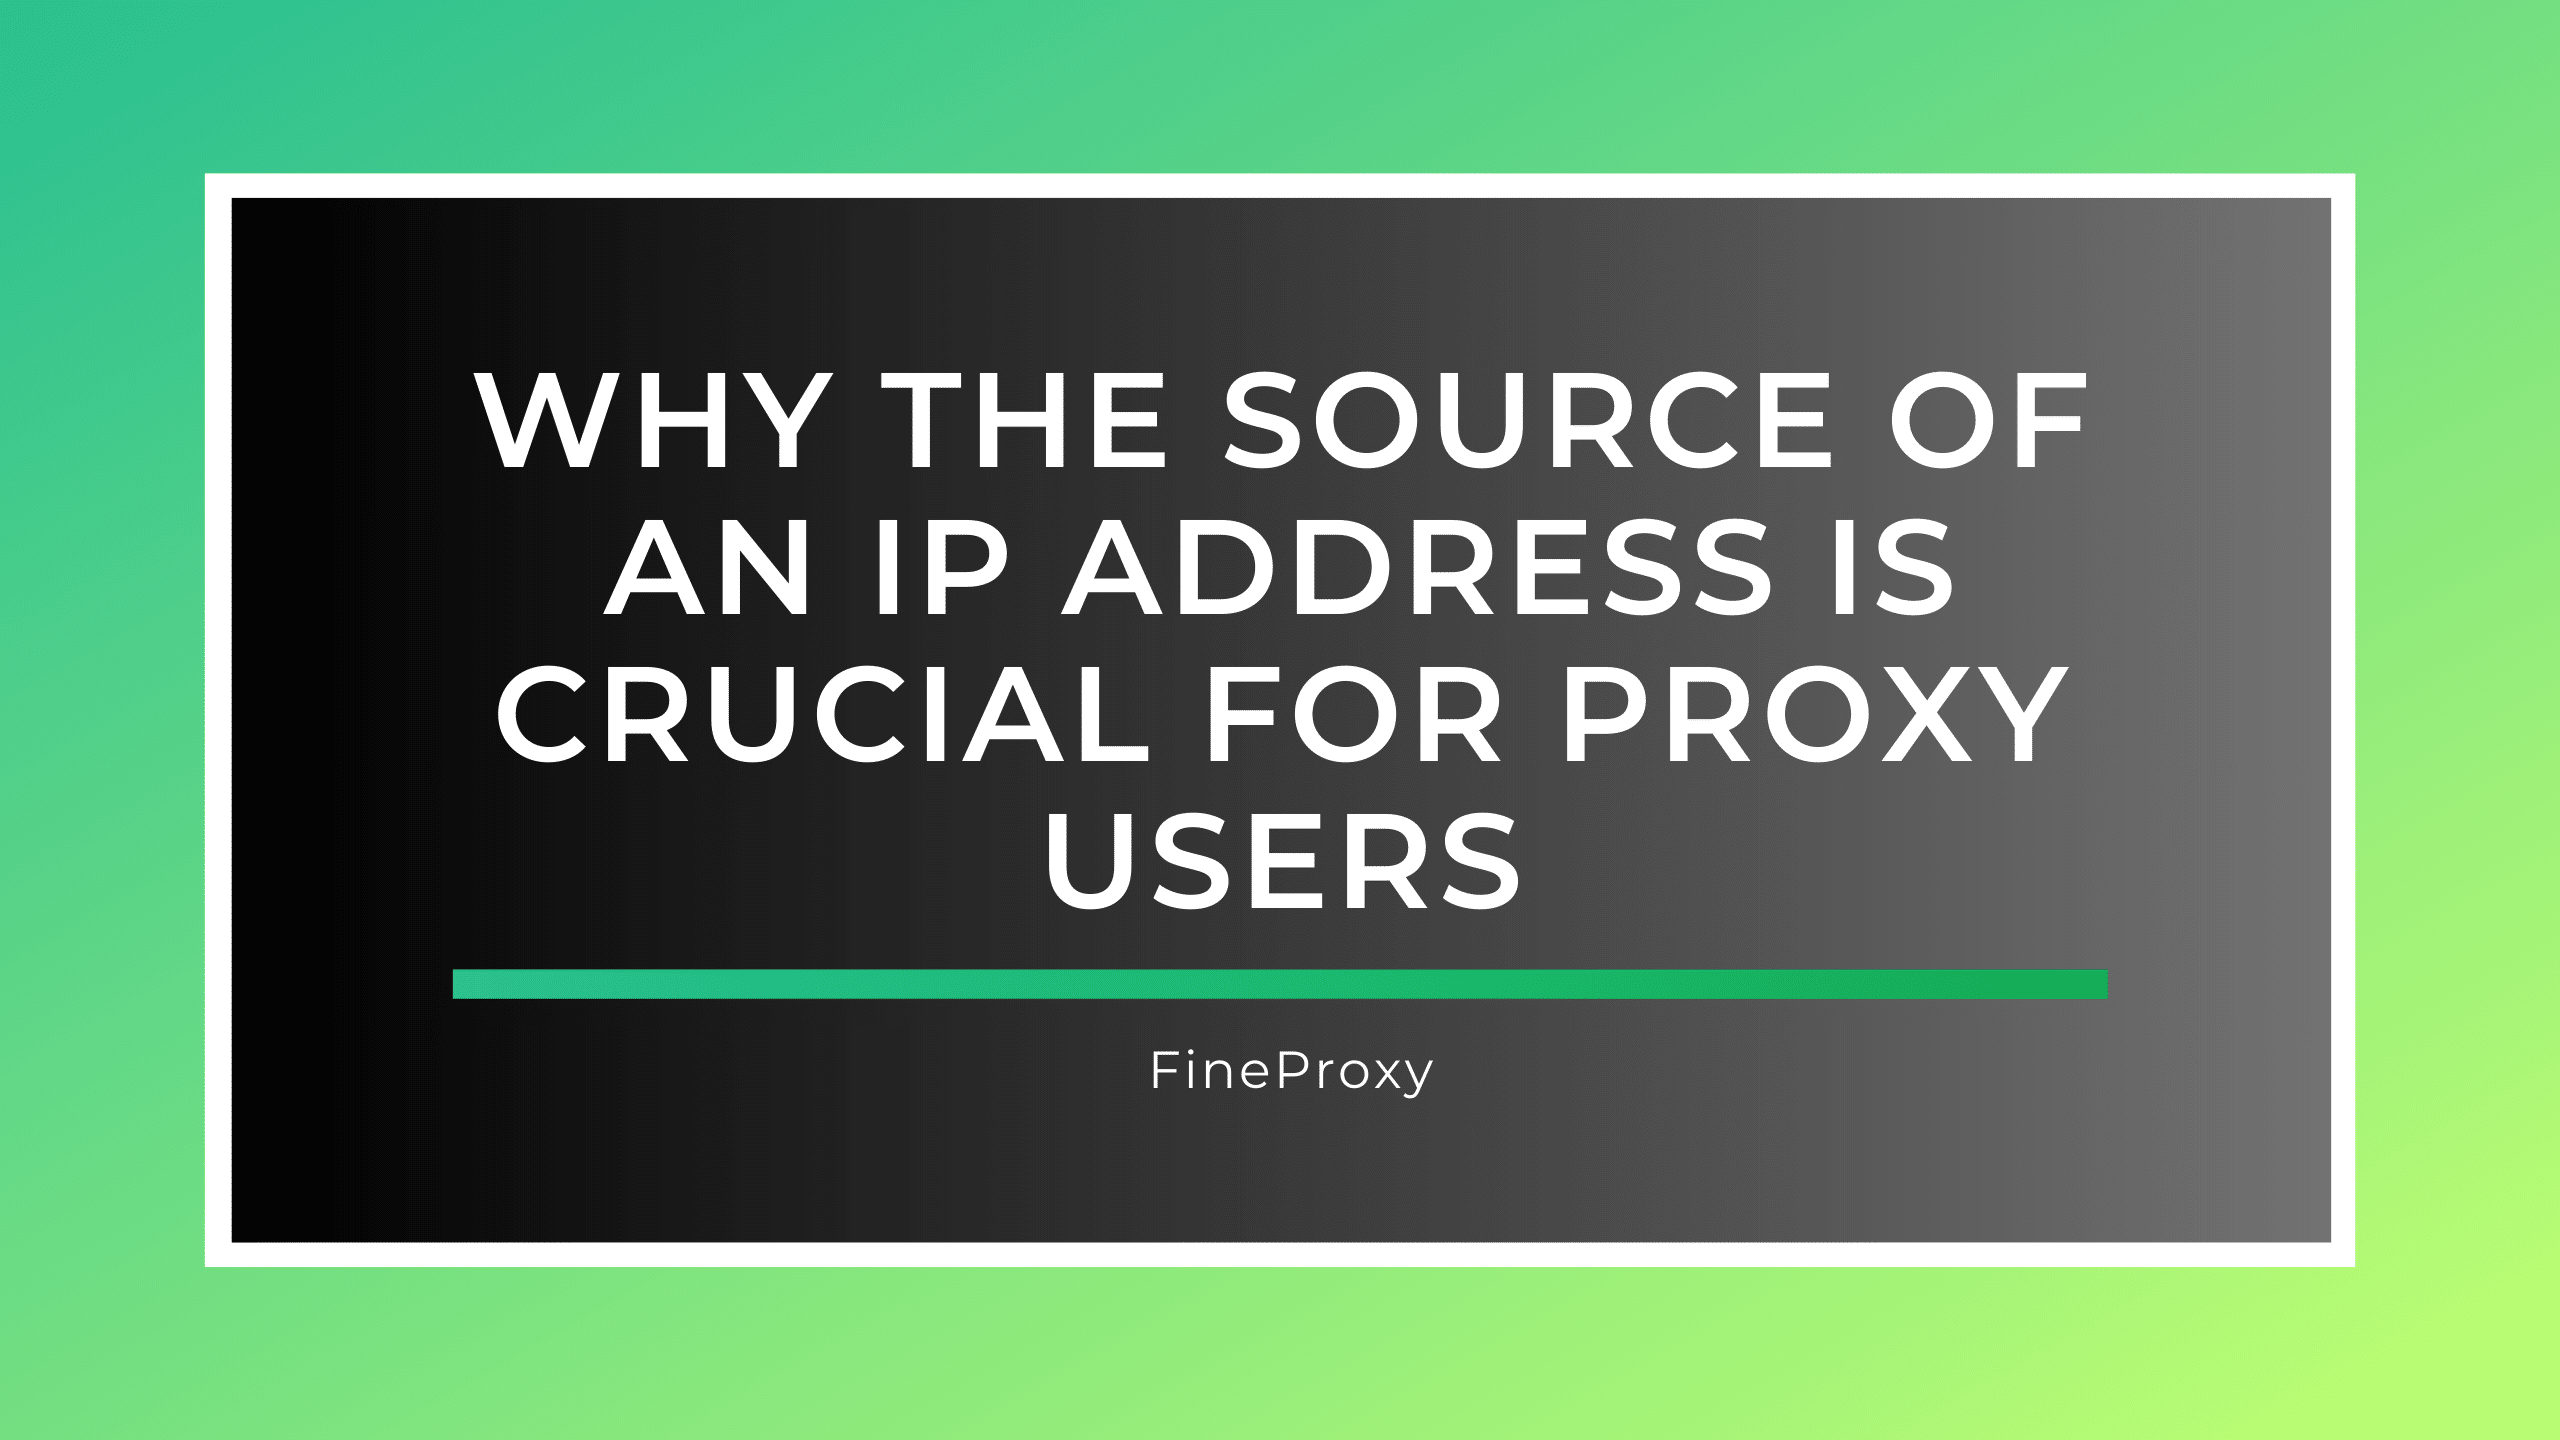 Tại sao nguồn địa chỉ IP lại quan trọng đối với người dùng proxy